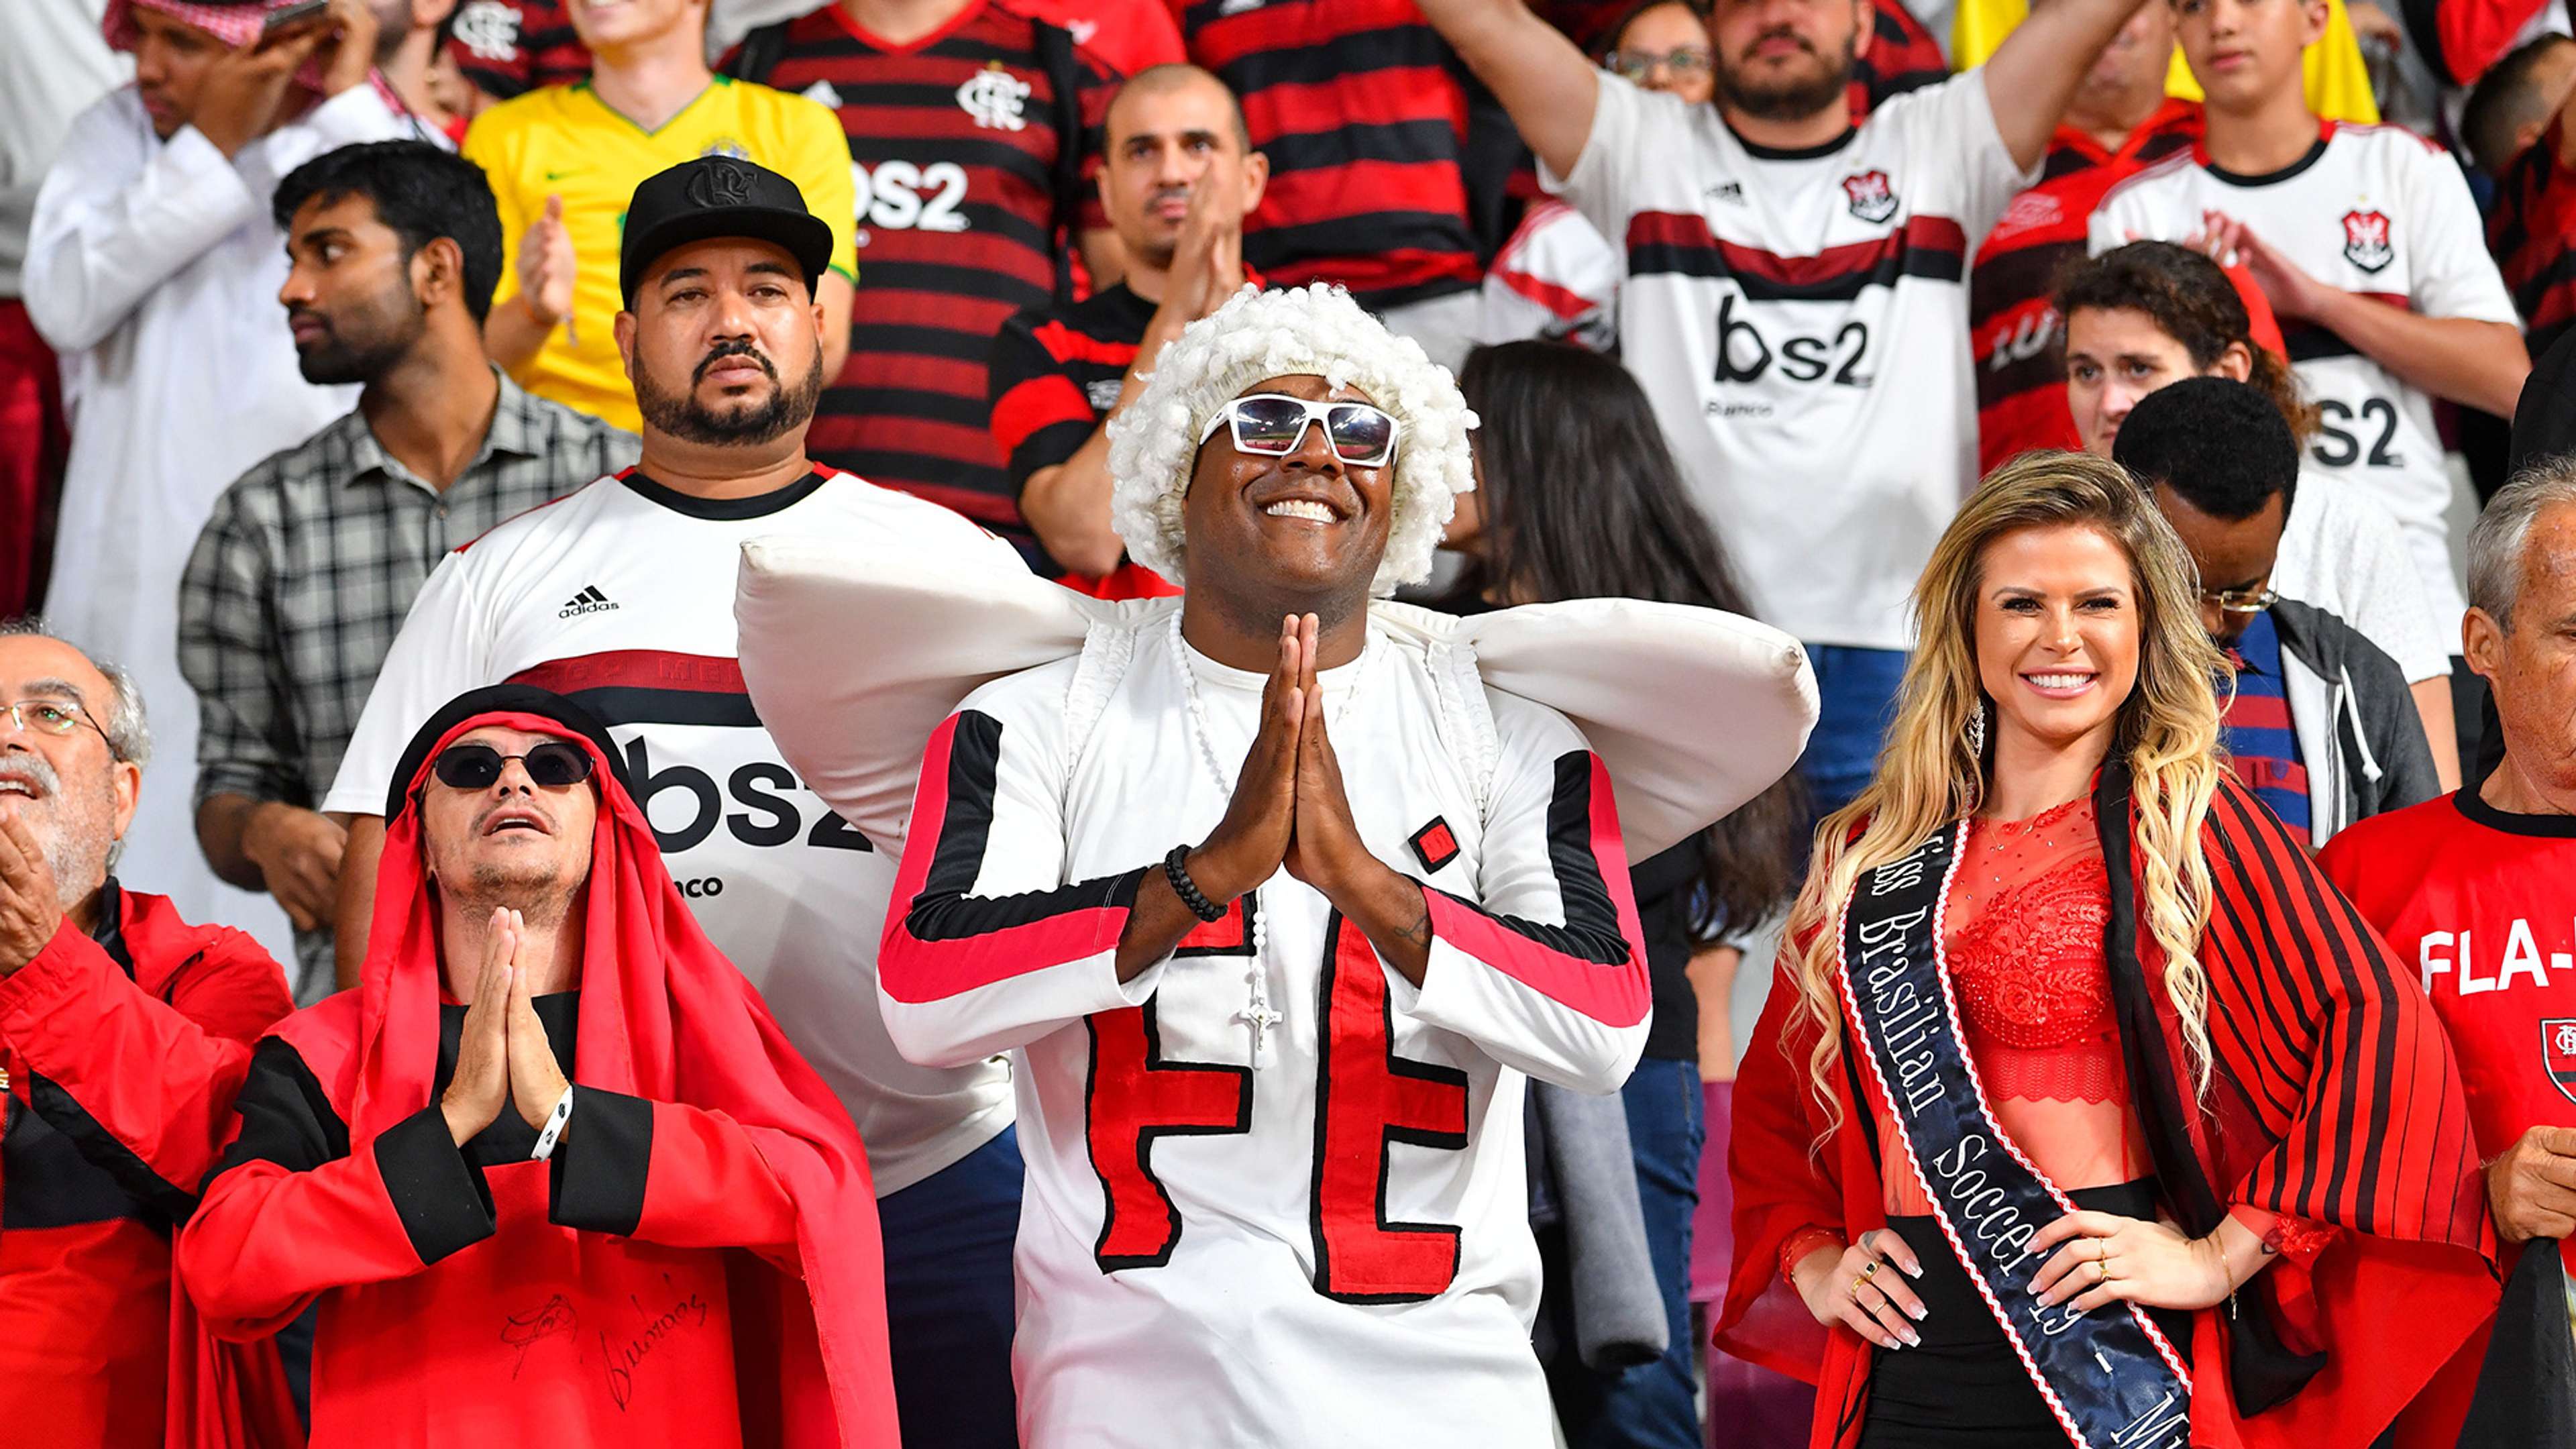 Torcida Flamengo Al-Hilal Mundial de Clubes 17 12 2019